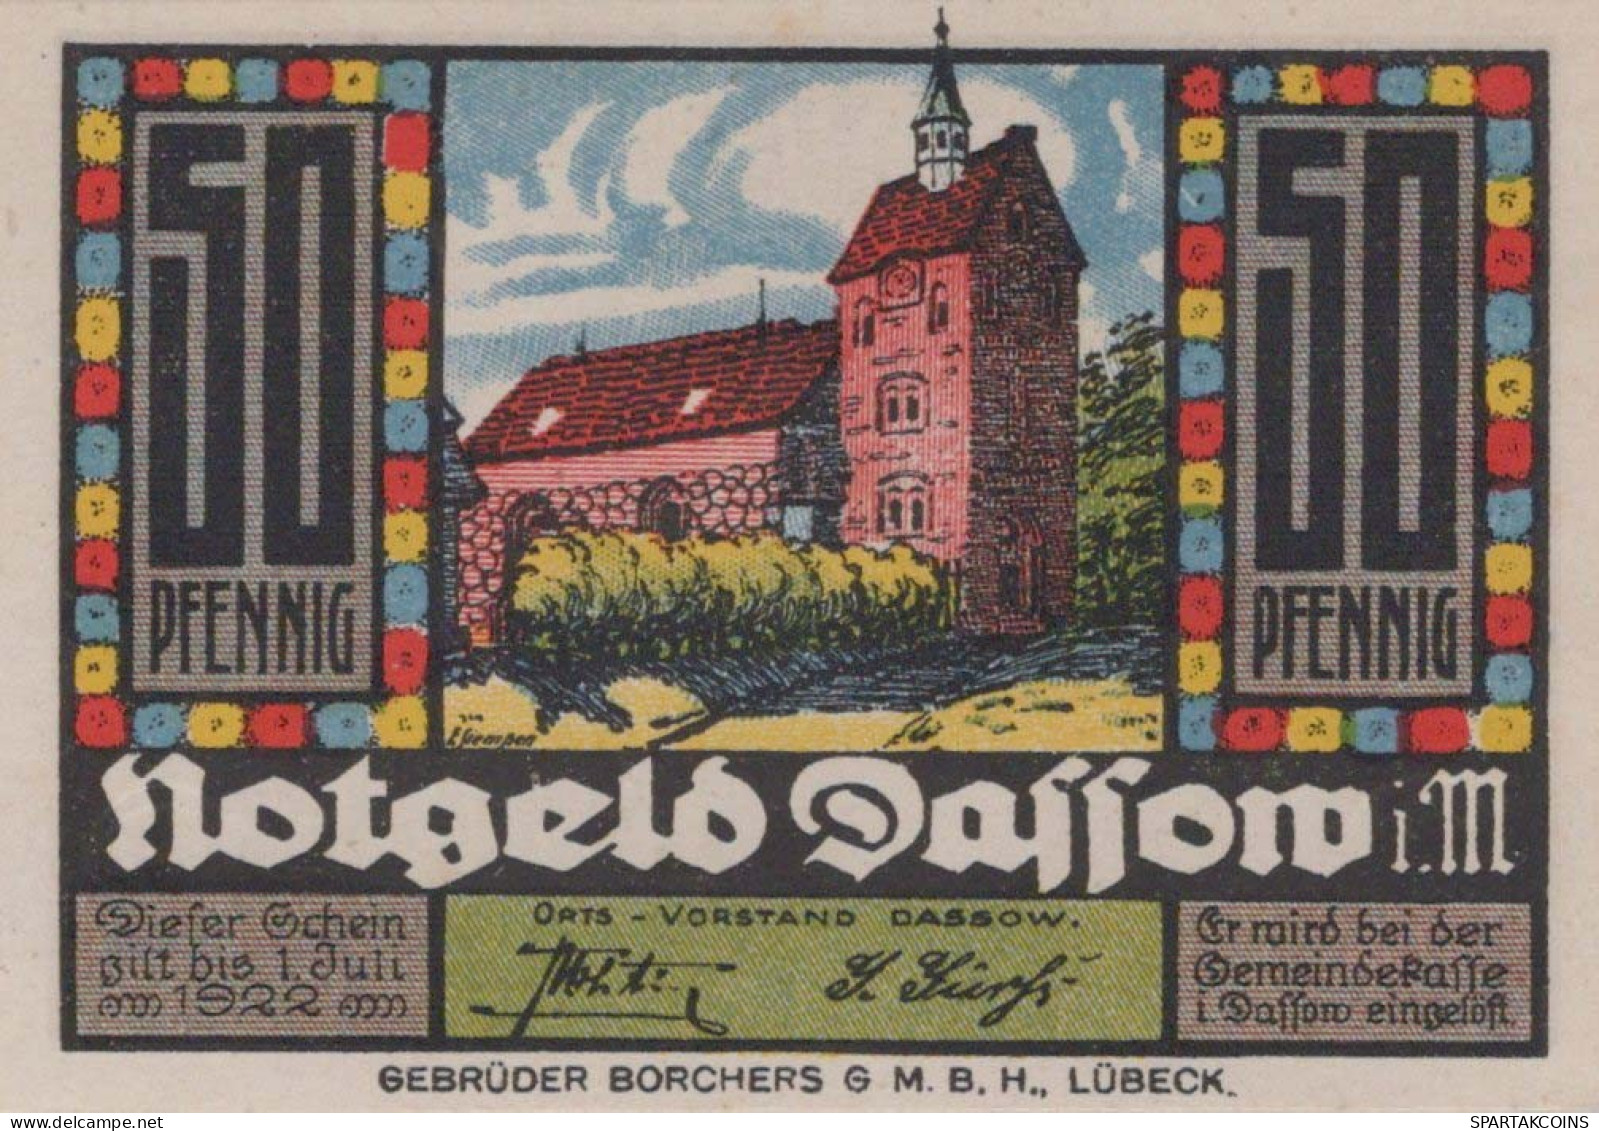 50 PFENNIG 1922 Stadt DASSOW Mecklenburg-Schwerin UNC DEUTSCHLAND Notgeld #PA428 - [11] Local Banknote Issues